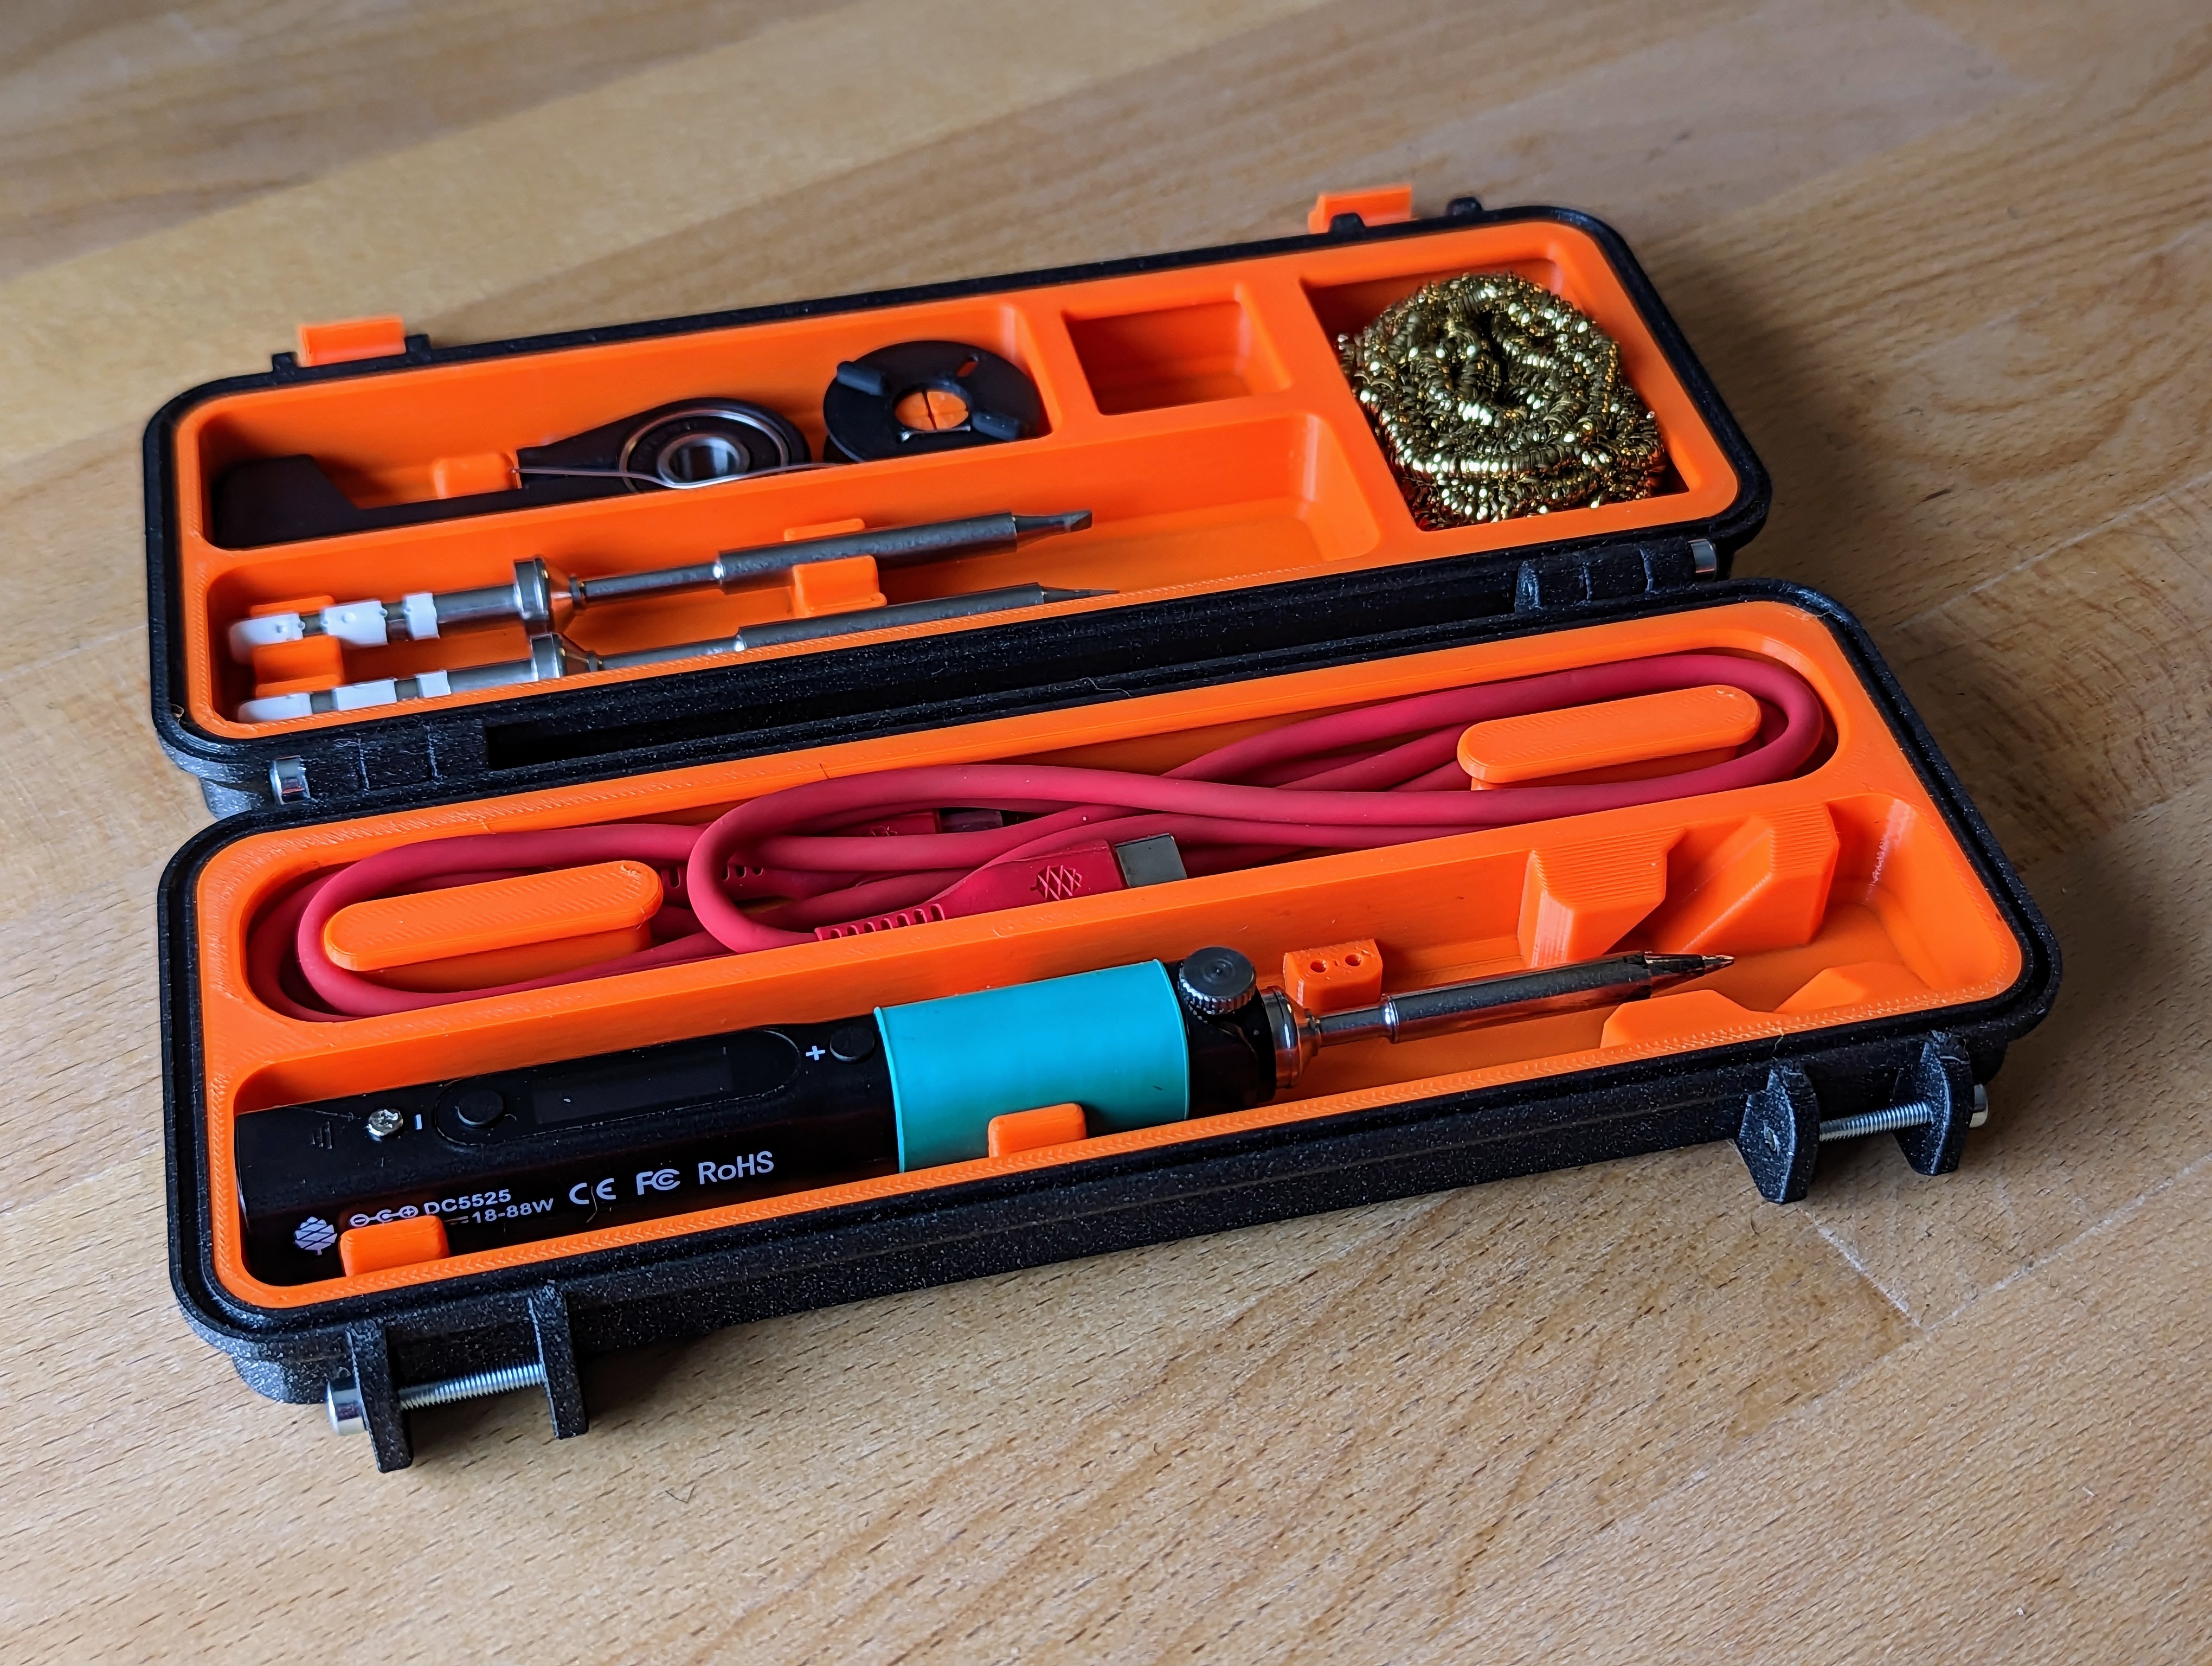 Robuster Case-Bausatz für den Pinecil - Alles sauber und perfekt verpackt